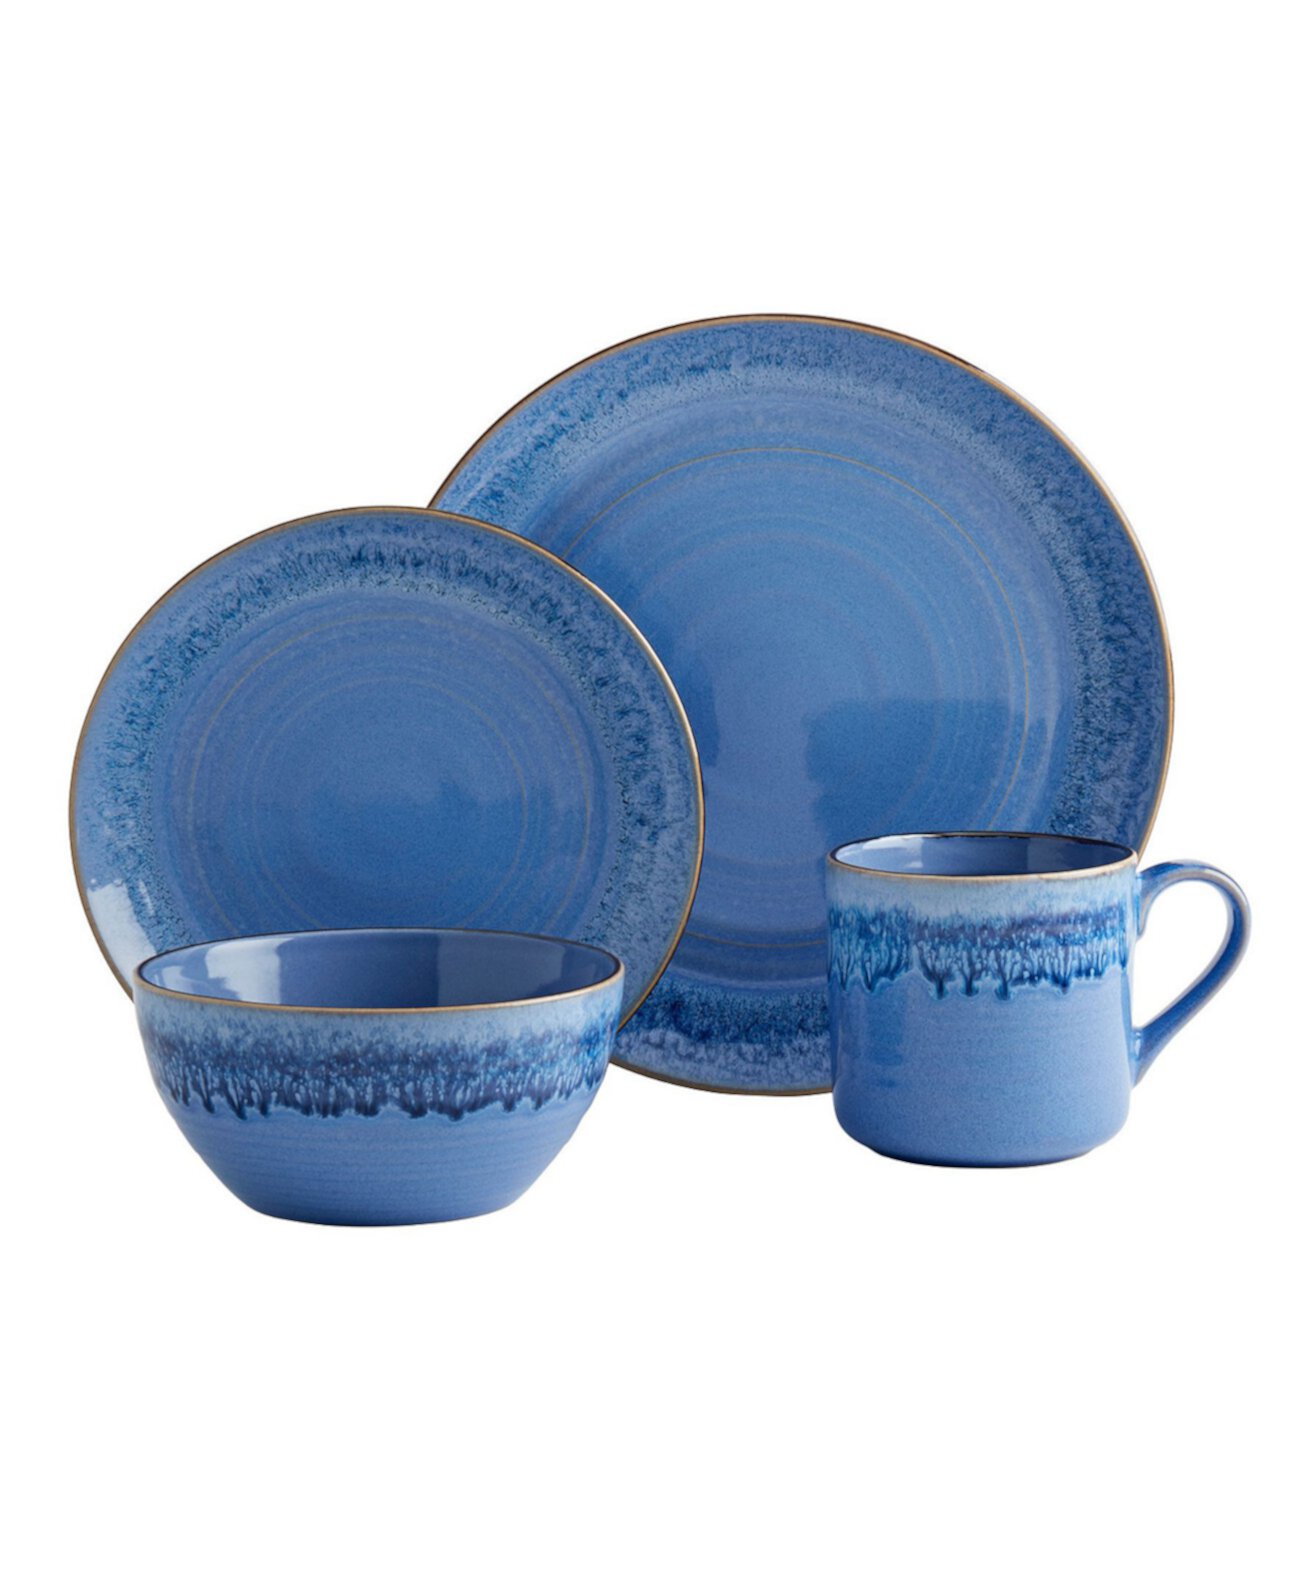 Набор столовой посуды Atlantis Blue из 16 шт. Сервиз на 4 персоны Tabletops Gallery